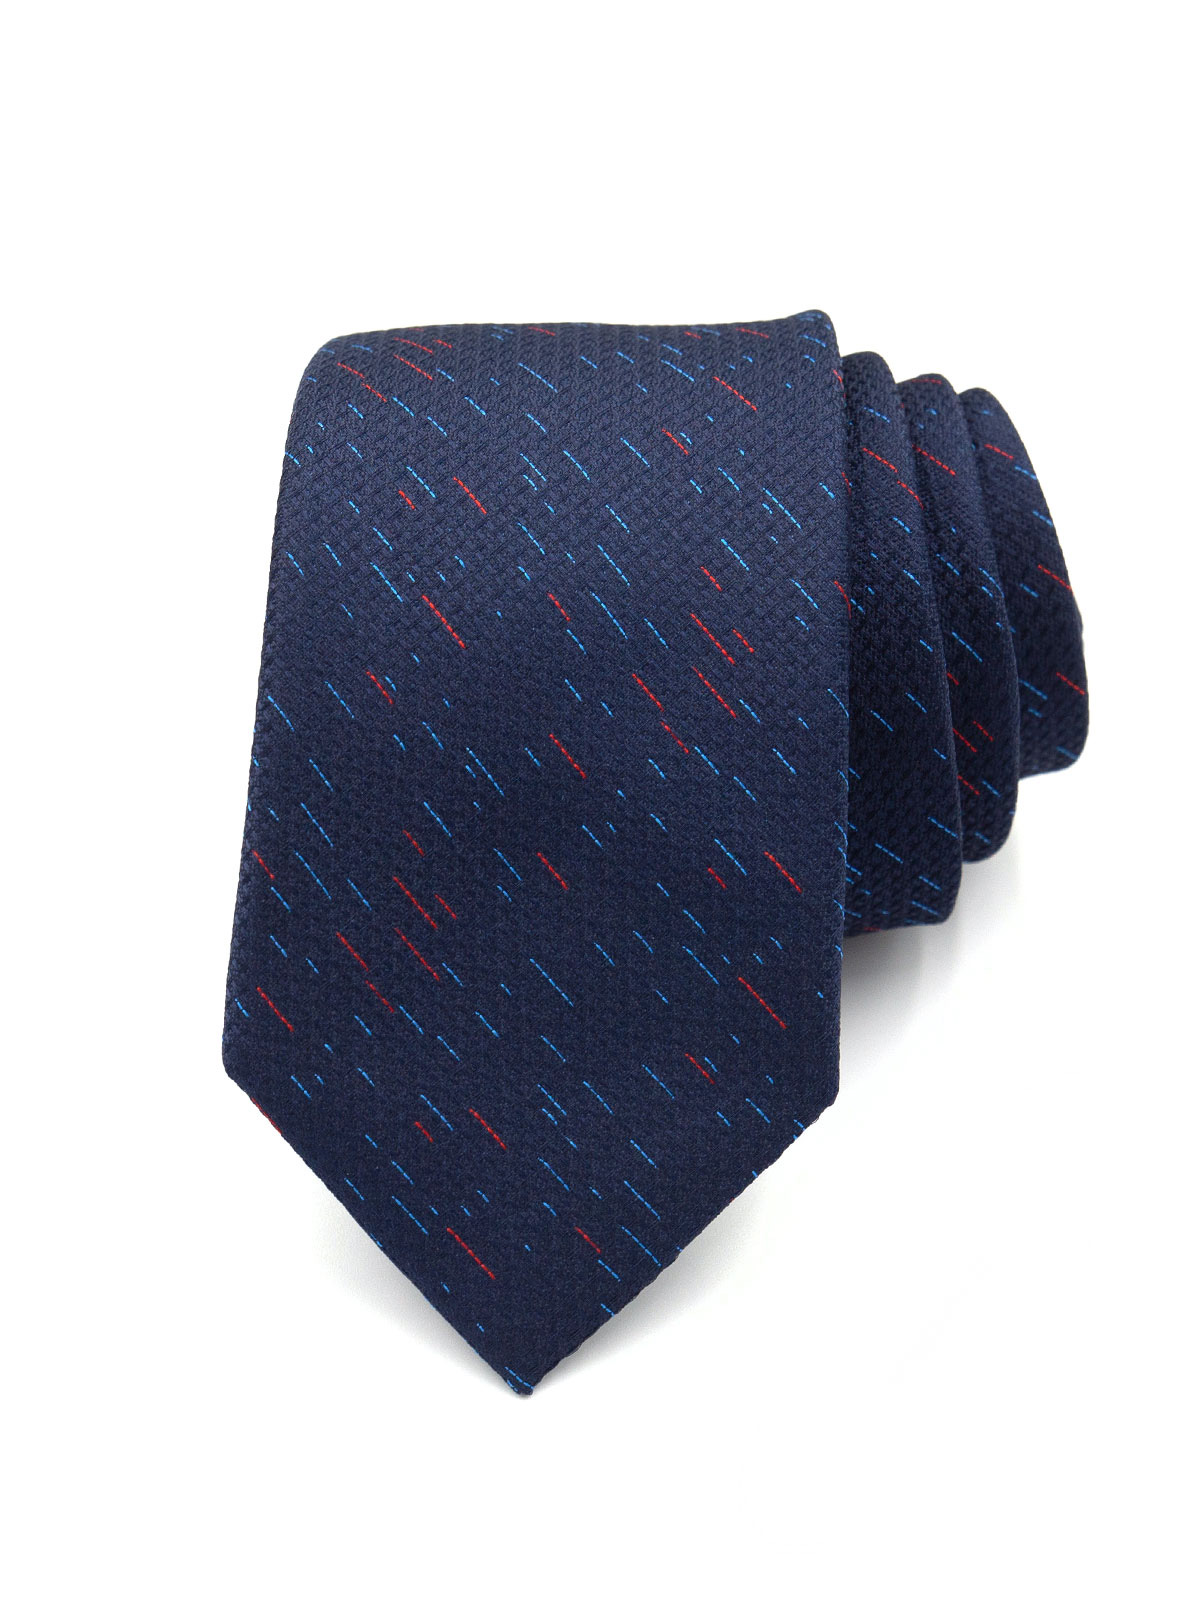 Δομημένη μπλε γραβάτα - 10174 - € 14.06